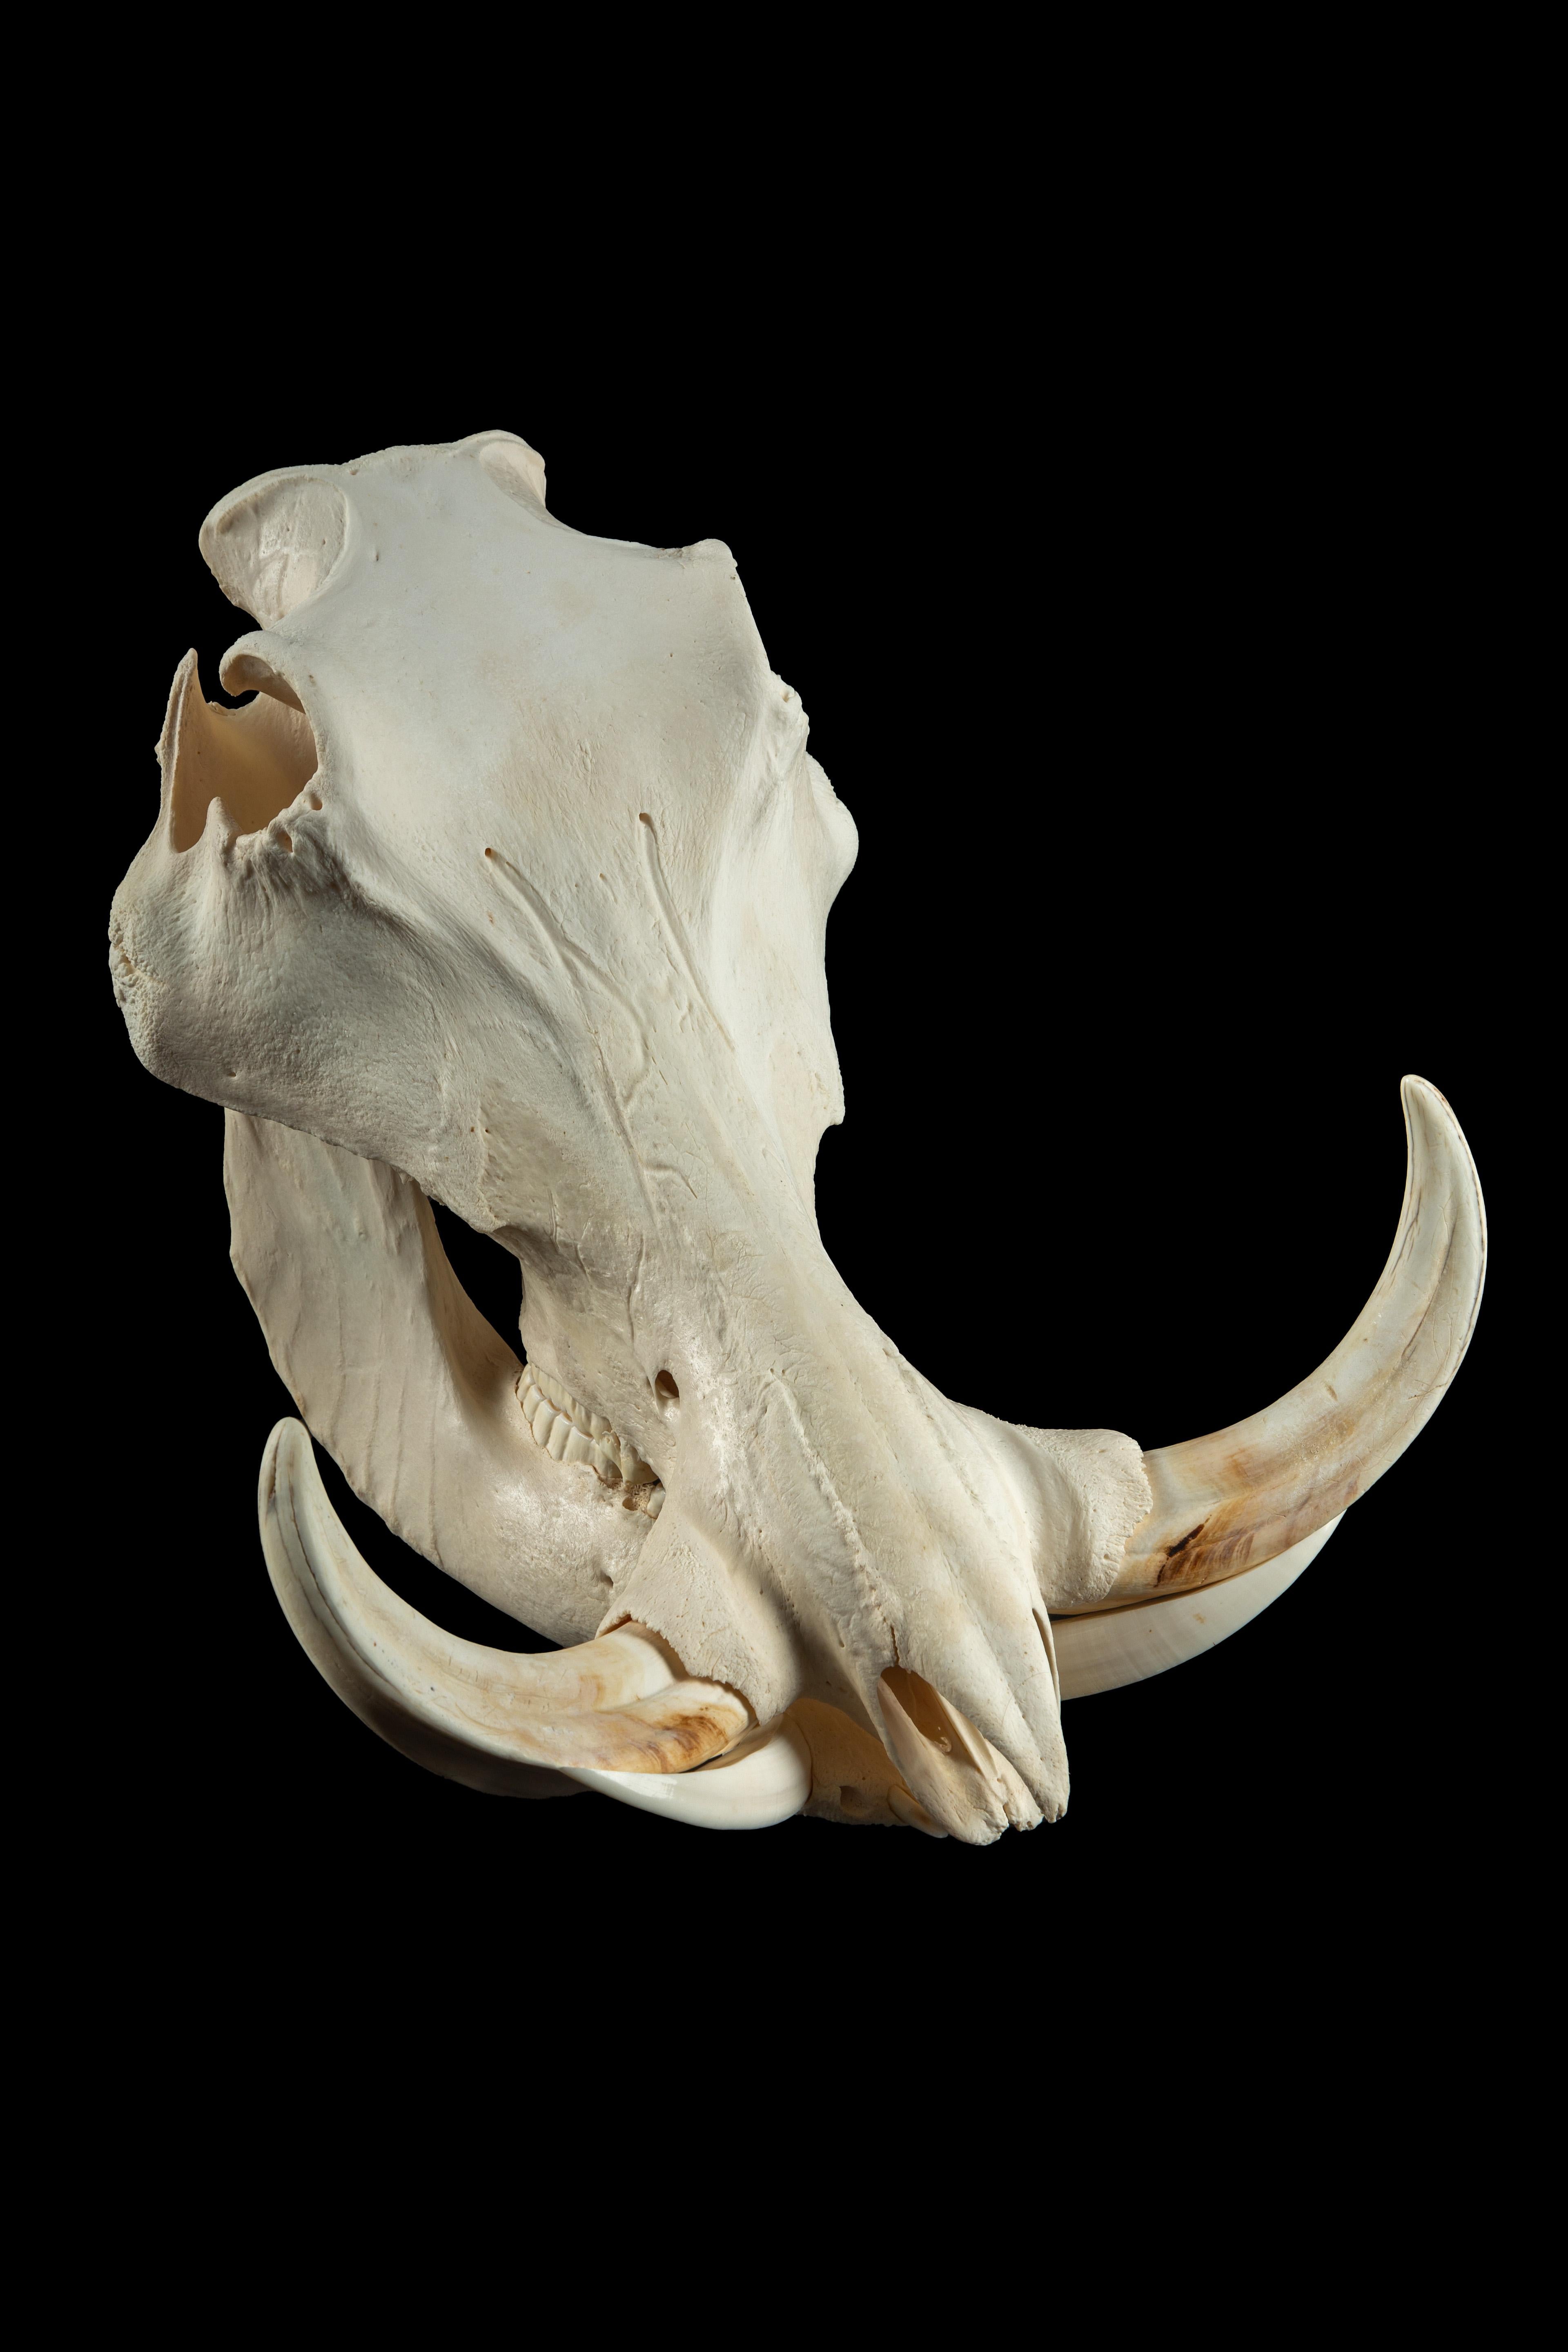 Crâne de phacochère :

Mesures : 13